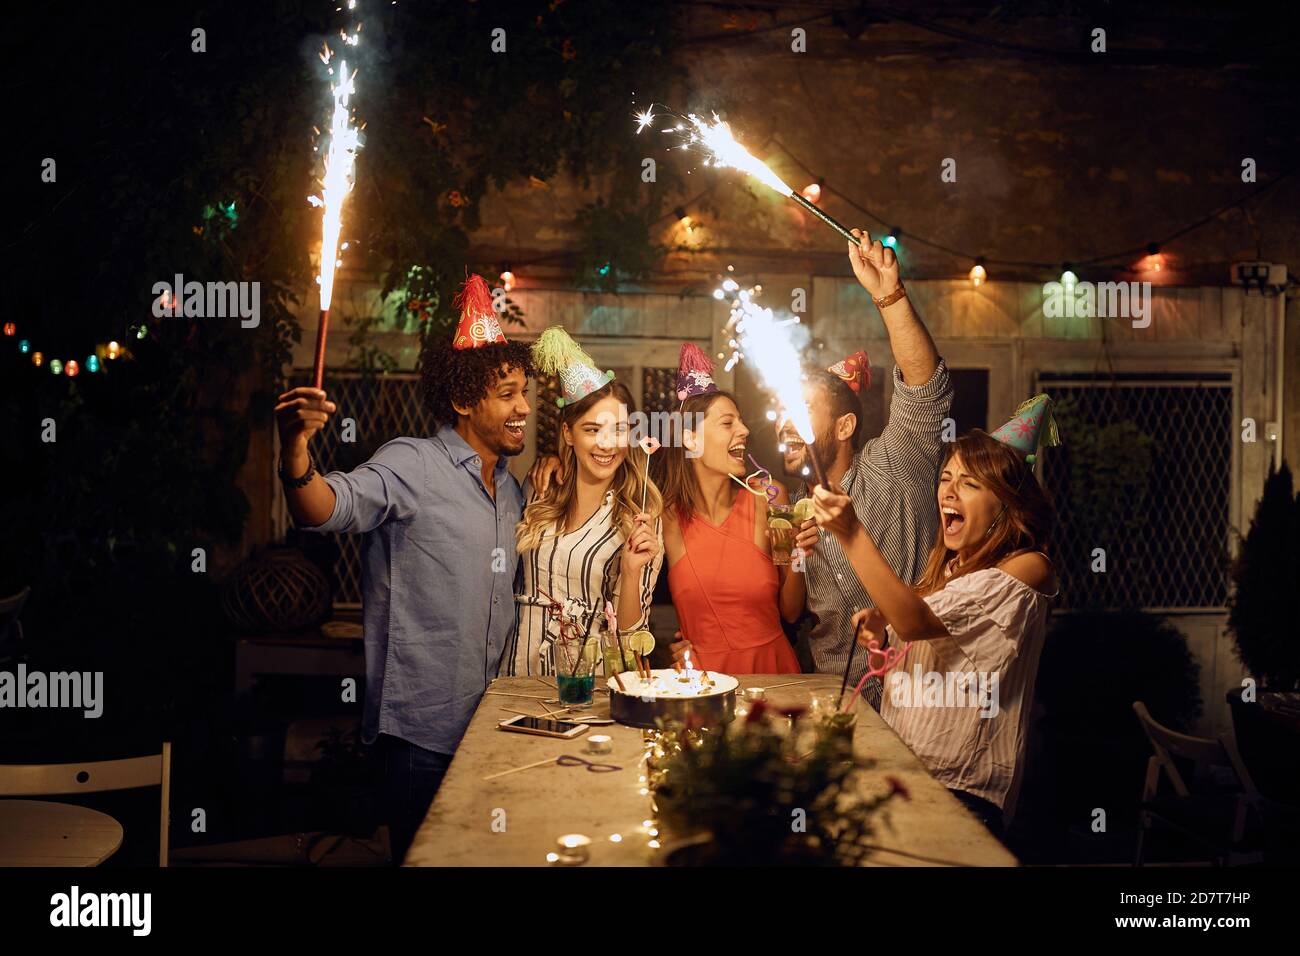 Gruppe von fröhlichen Freunden spielen mit Feuerwerk auf der Open-Air-Geburtstagsparty an einem schönen Sommerabend. Qualität Freundschaft Zeit zusammen Stockfoto